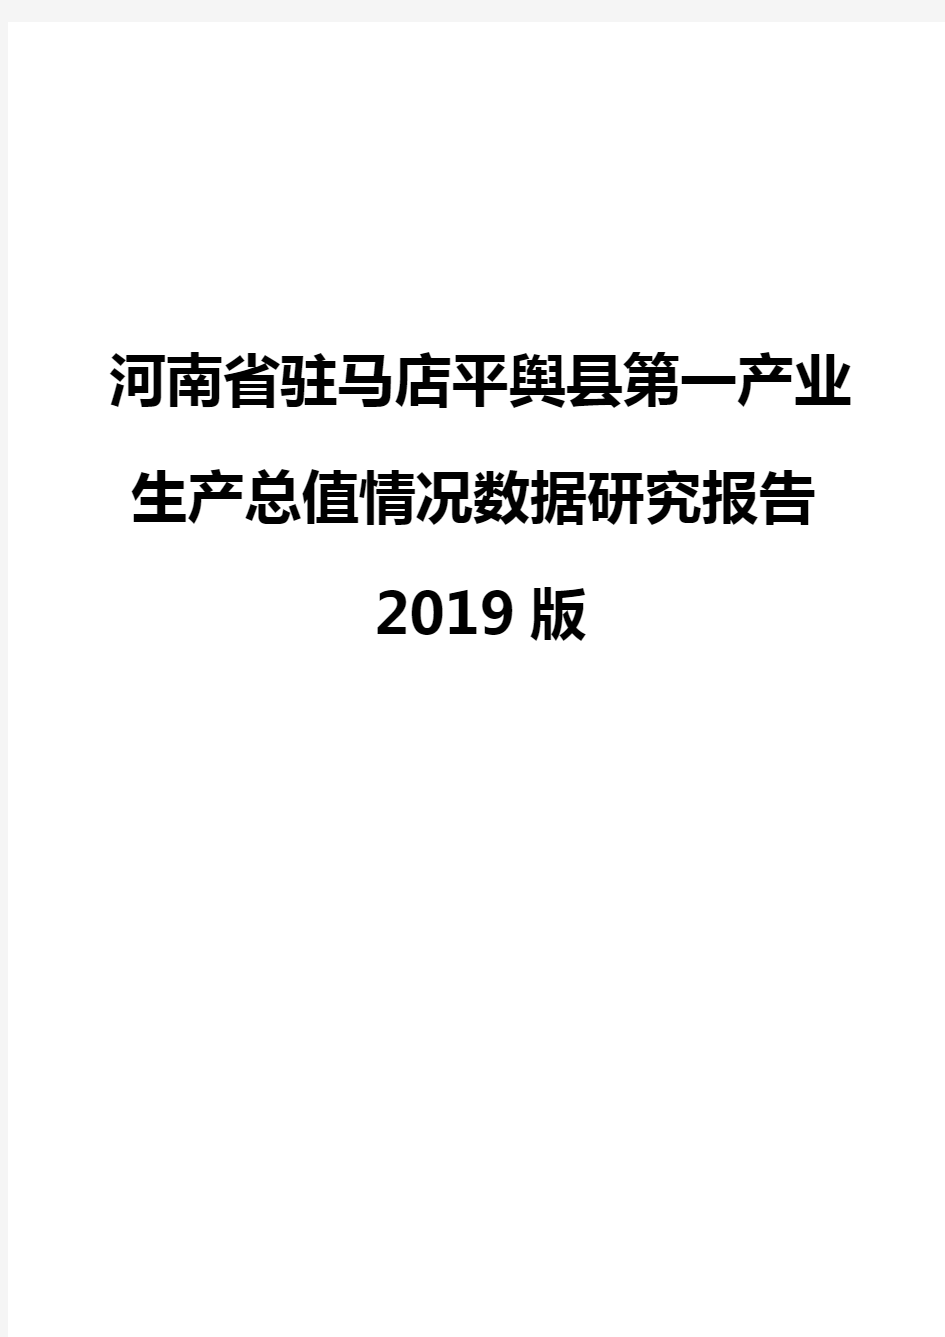 河南省驻马店平舆县第一产业生产总值情况数据研究报告2019版